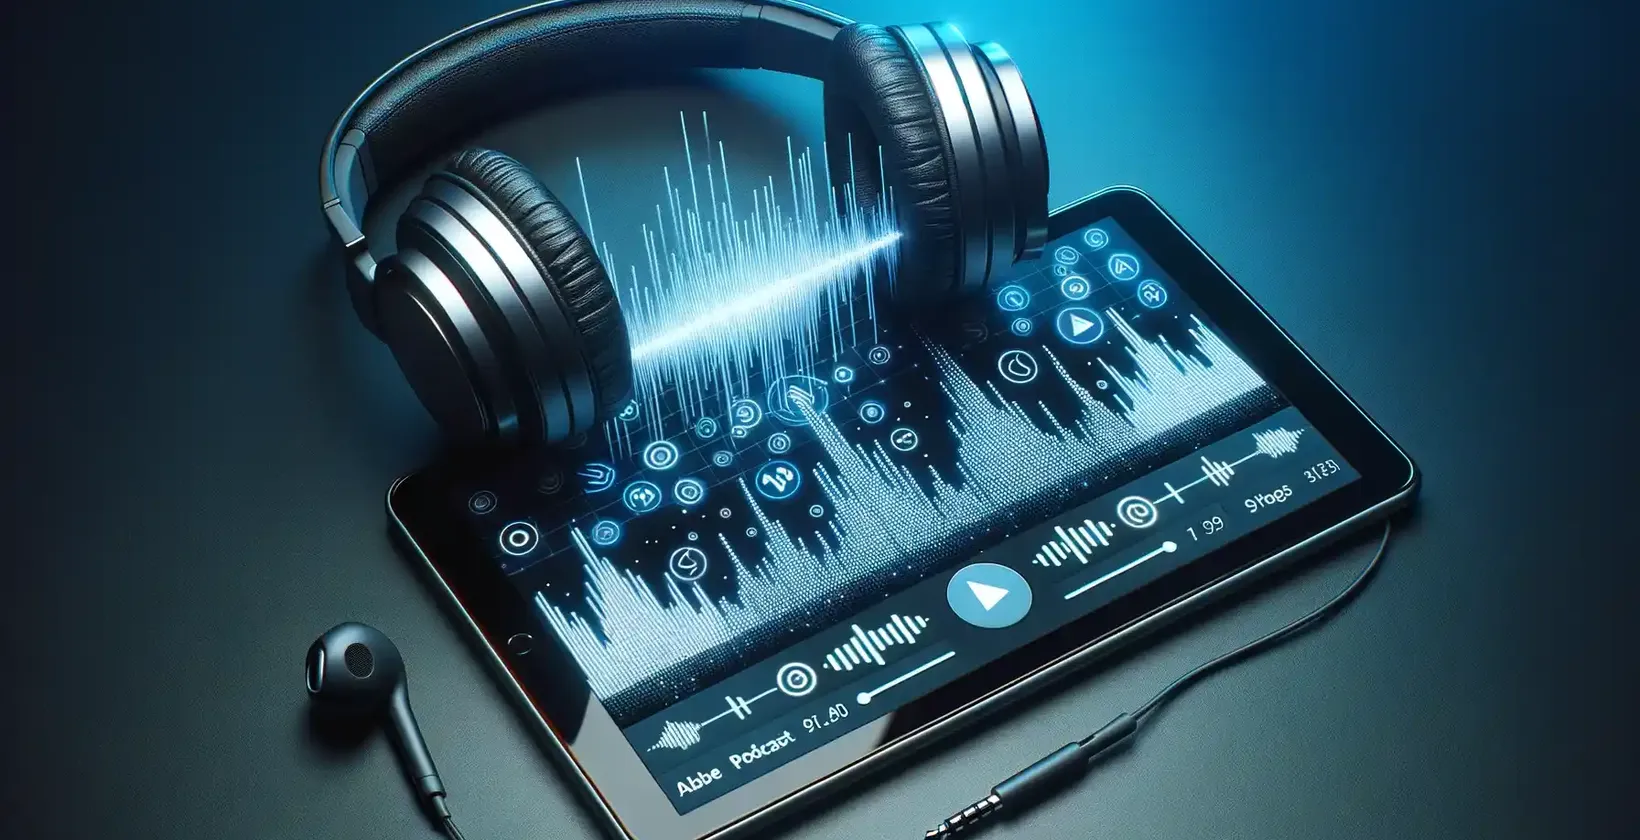 Tablettens skærm viser levende lydbølger, digitale knapper og indstillinger på en dybblå baggrund.